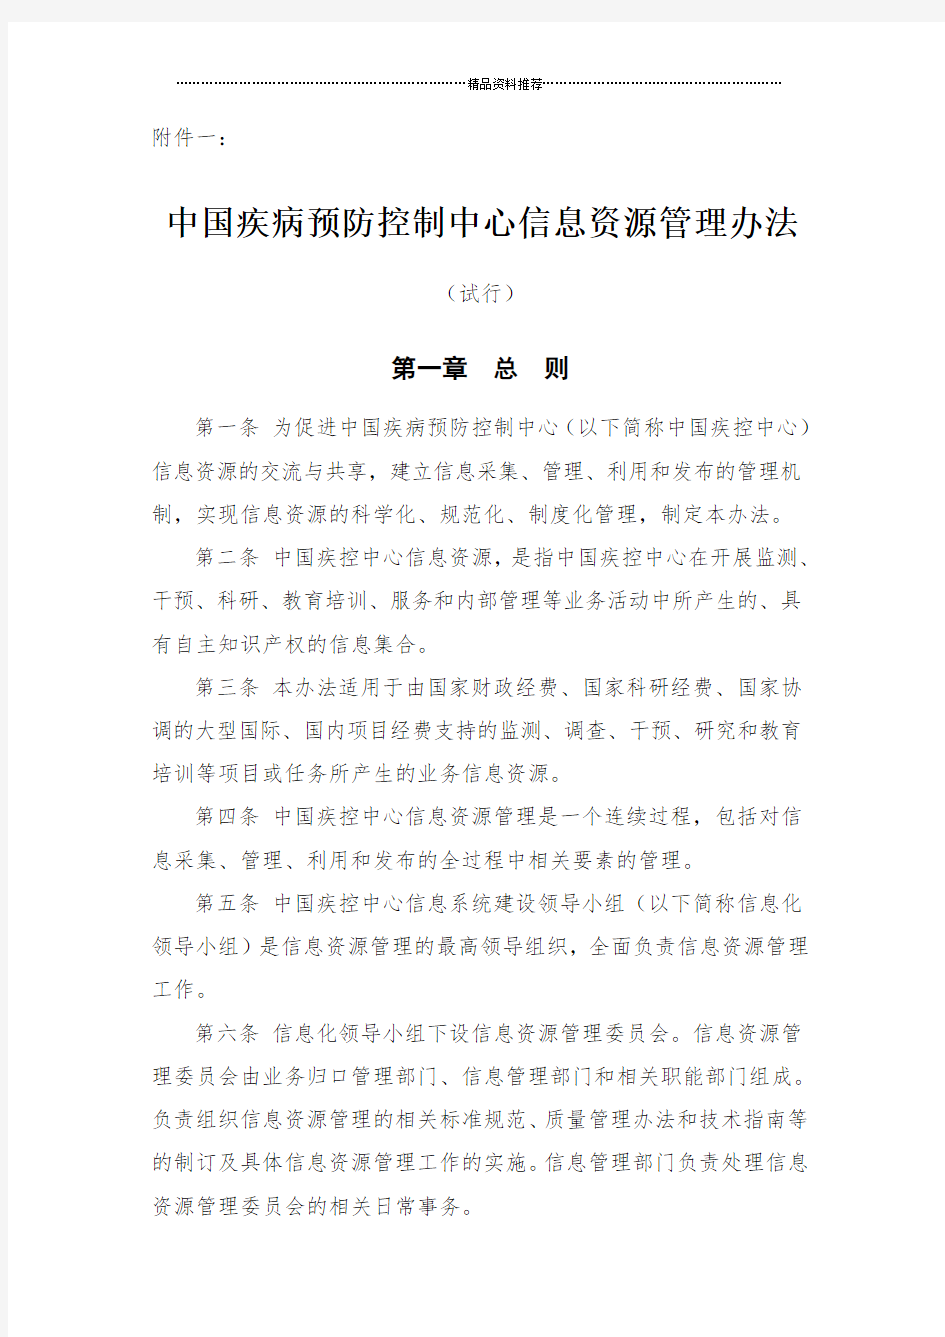 中国疾病预防控制中心信息资源管理办法(试行)